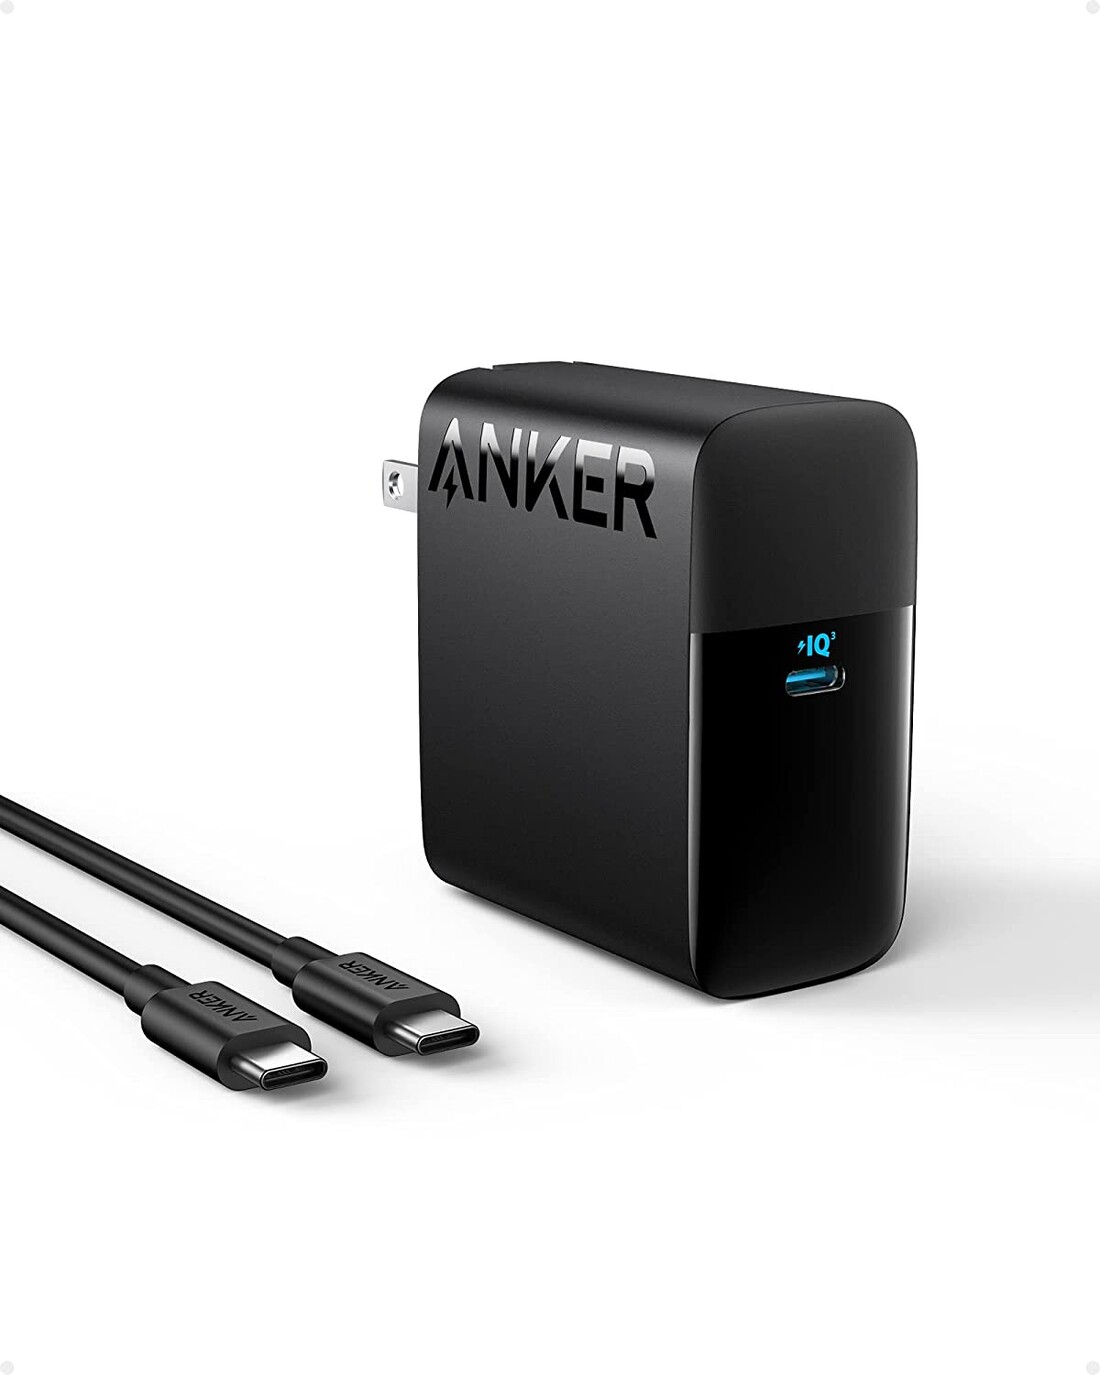 L'Anker 317 est un chargeur USB-C de 100W. (Source de l'image : Anker via Amazon)